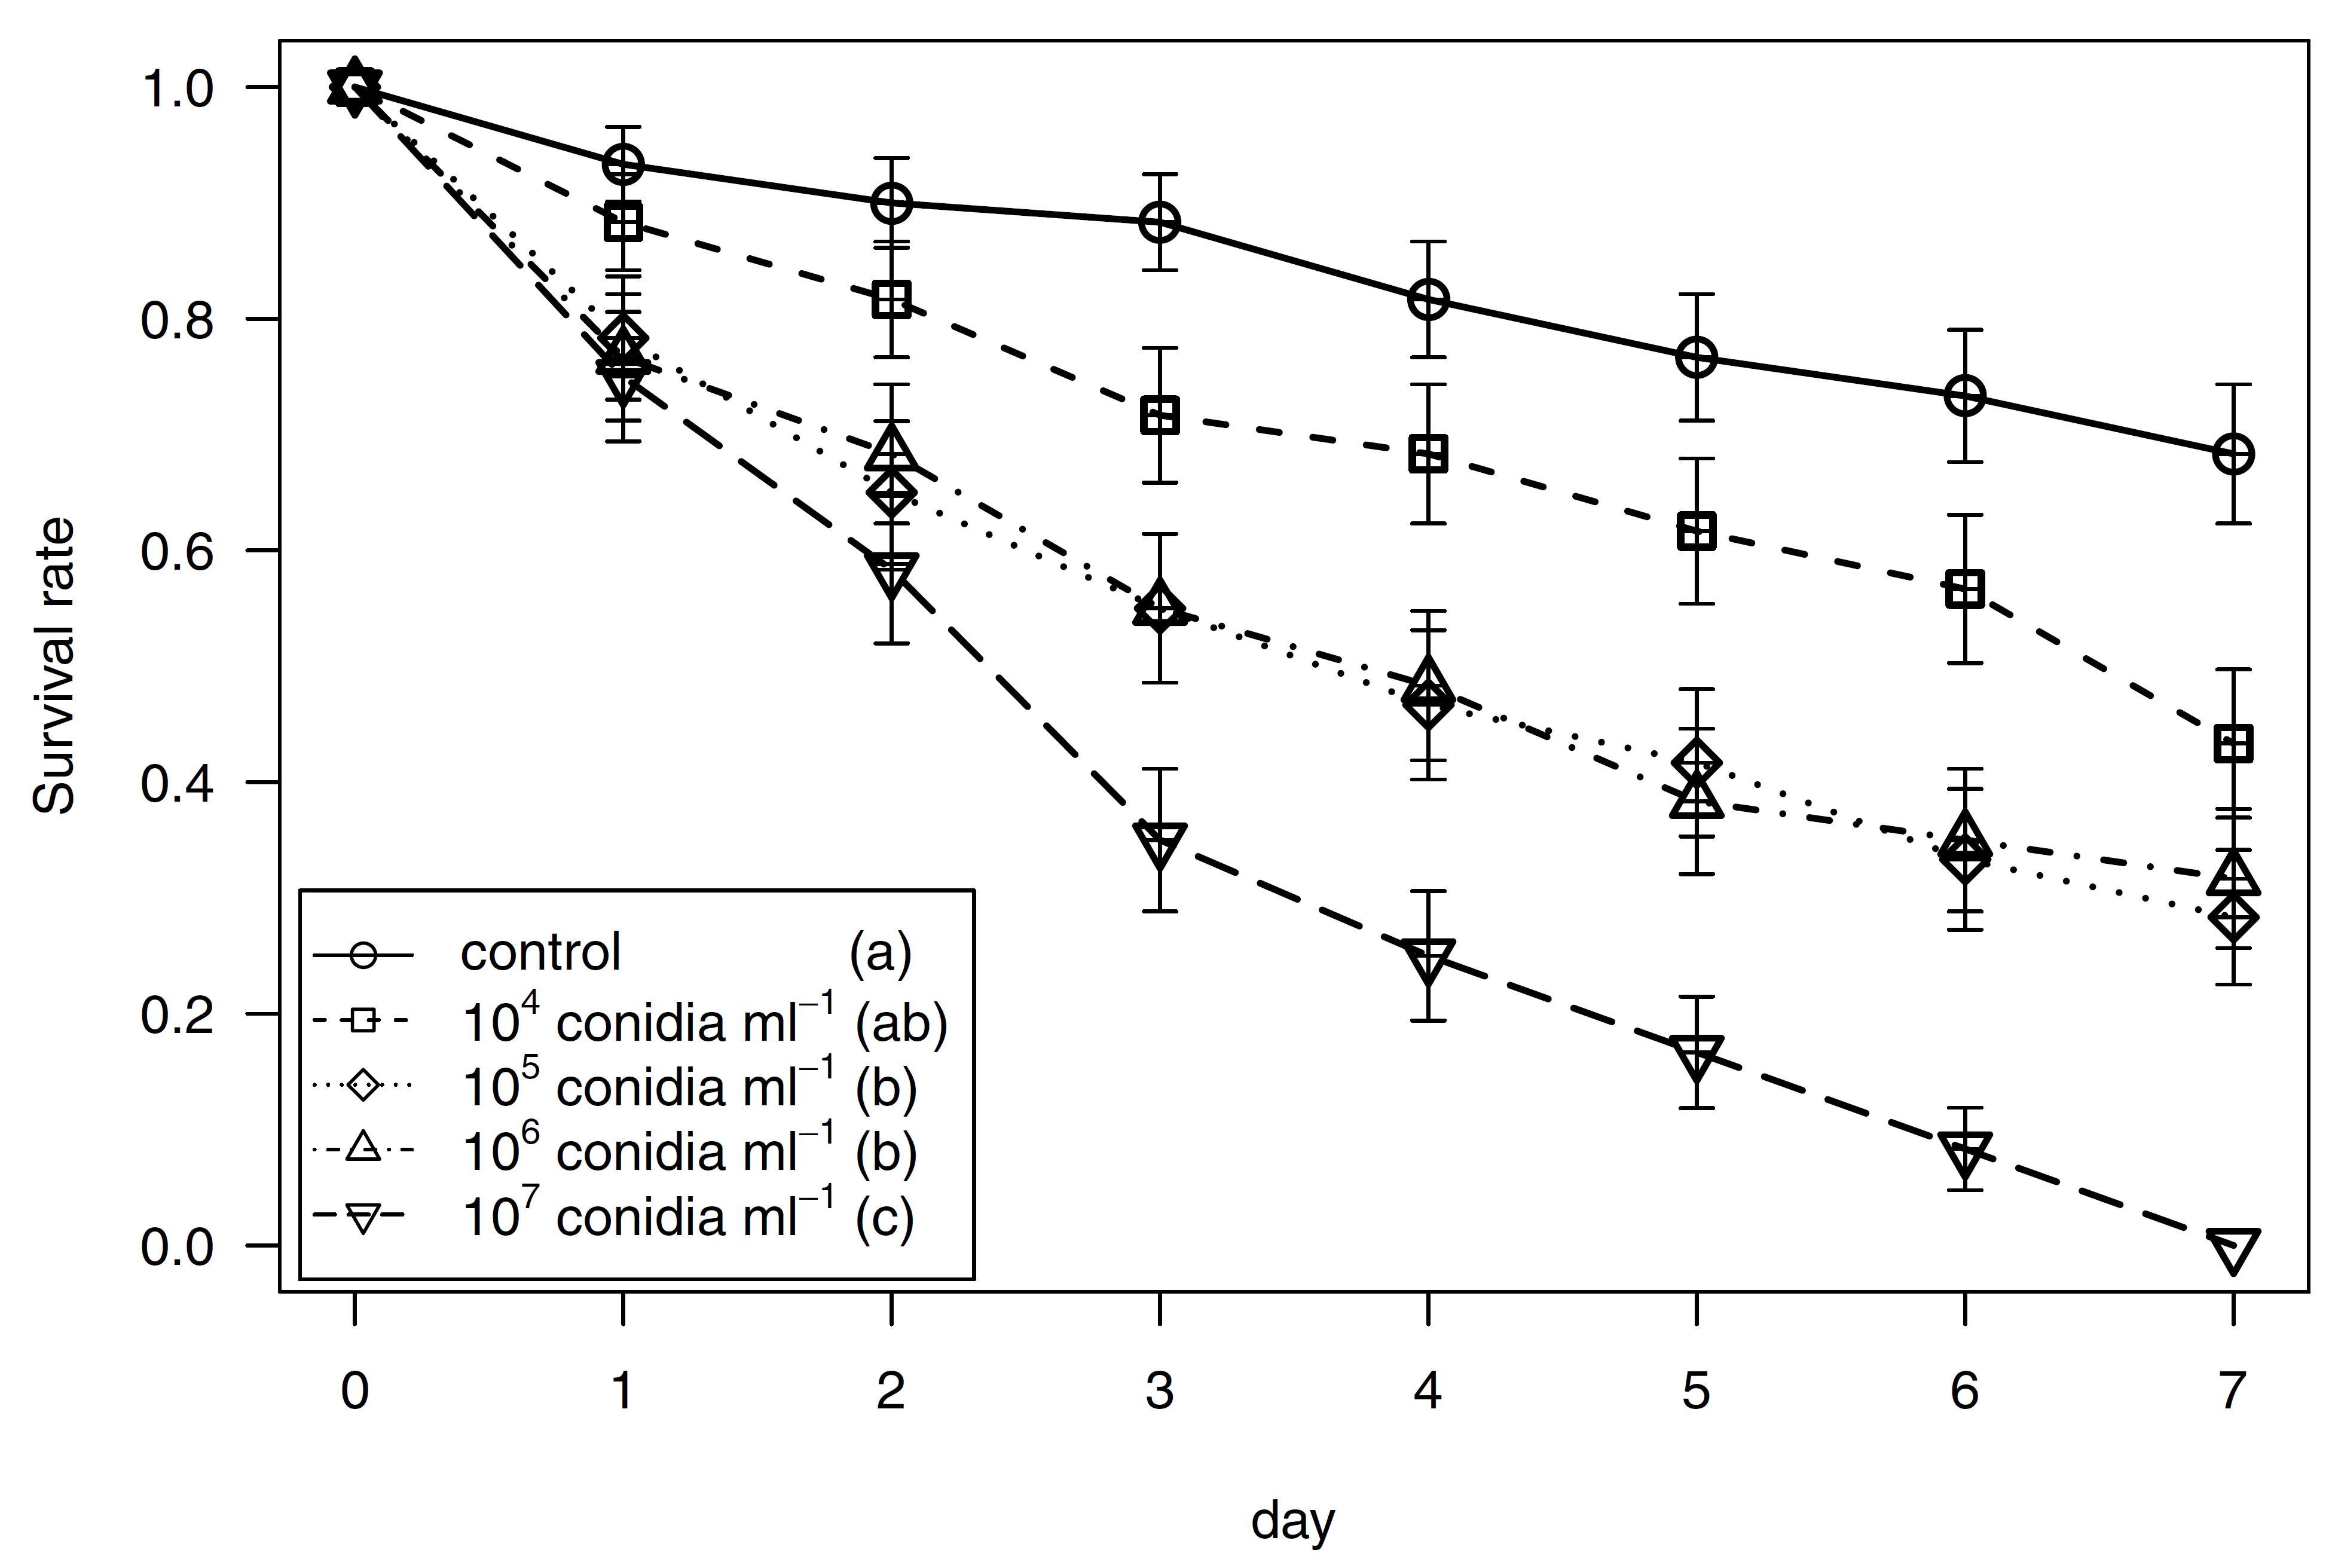 (點線圖)在國際期刊「Biocontrol (生物防治)」所發表之「Aspergillus nomius專利菌株AA-781」從2018年成功自南投縣魚池鄉森林內分離，經三年多實驗證實在實驗室環境下對疣胸琉璃蟻可達90 %以上的致死率。圖中縱軸為螞蟻存活率，橫軸為施用真菌孢子後天數。不同符號代表不同濃度的真菌孢子數(單位為每毫升) 。